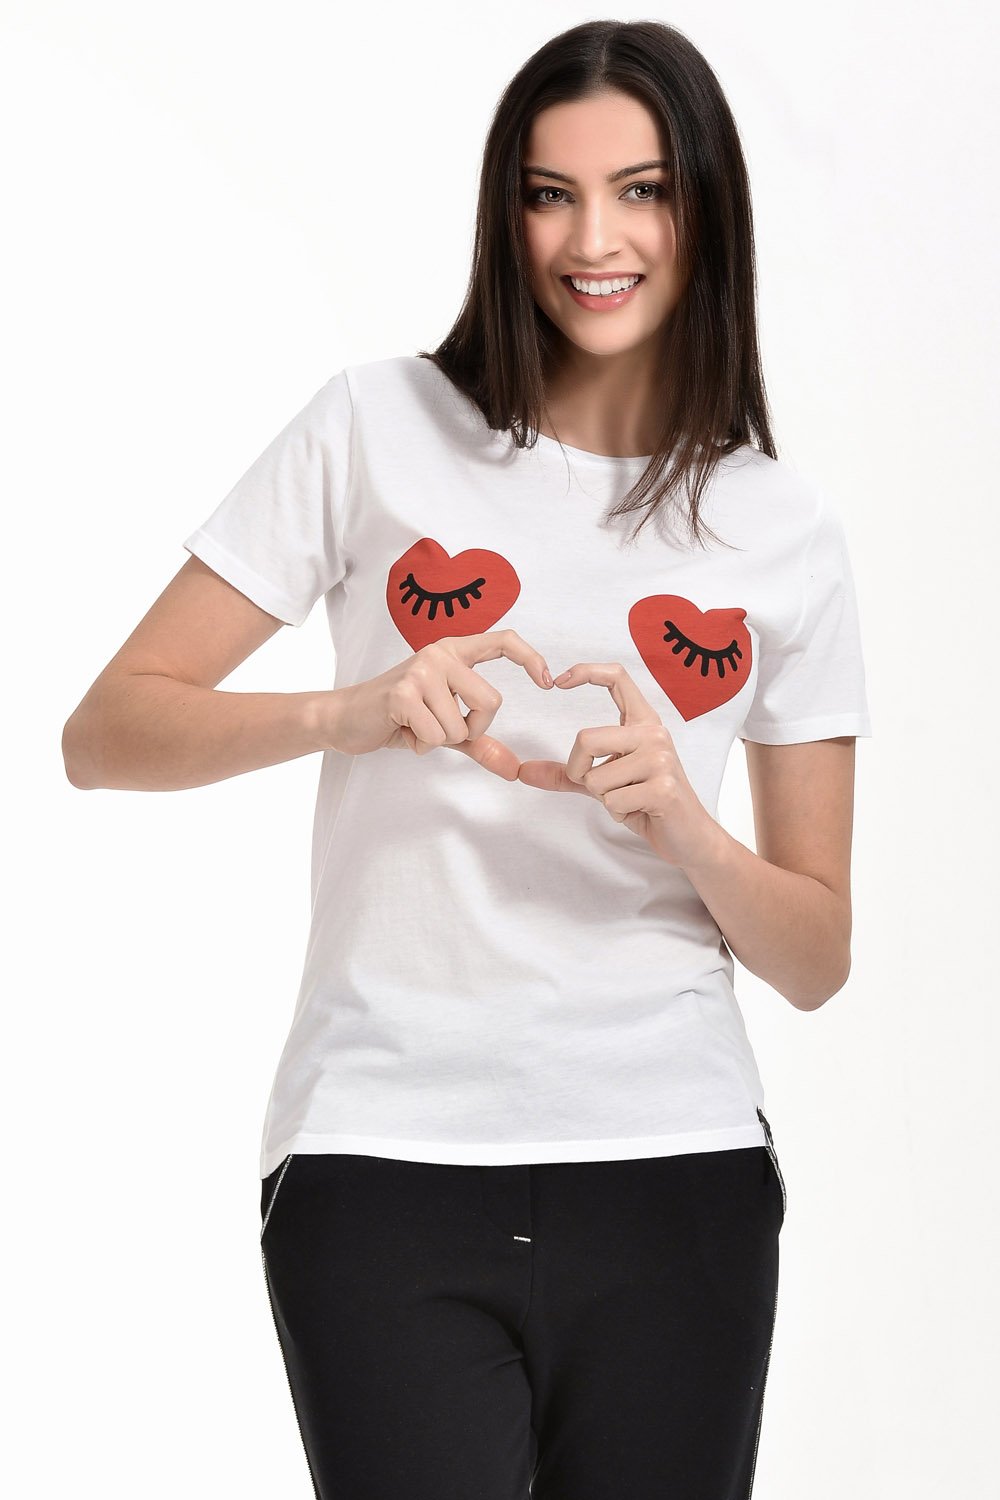 Cotton Candy Kalp-Kirpik Baskılı Kısa Kol Kadın T-Shirt - Beyaz